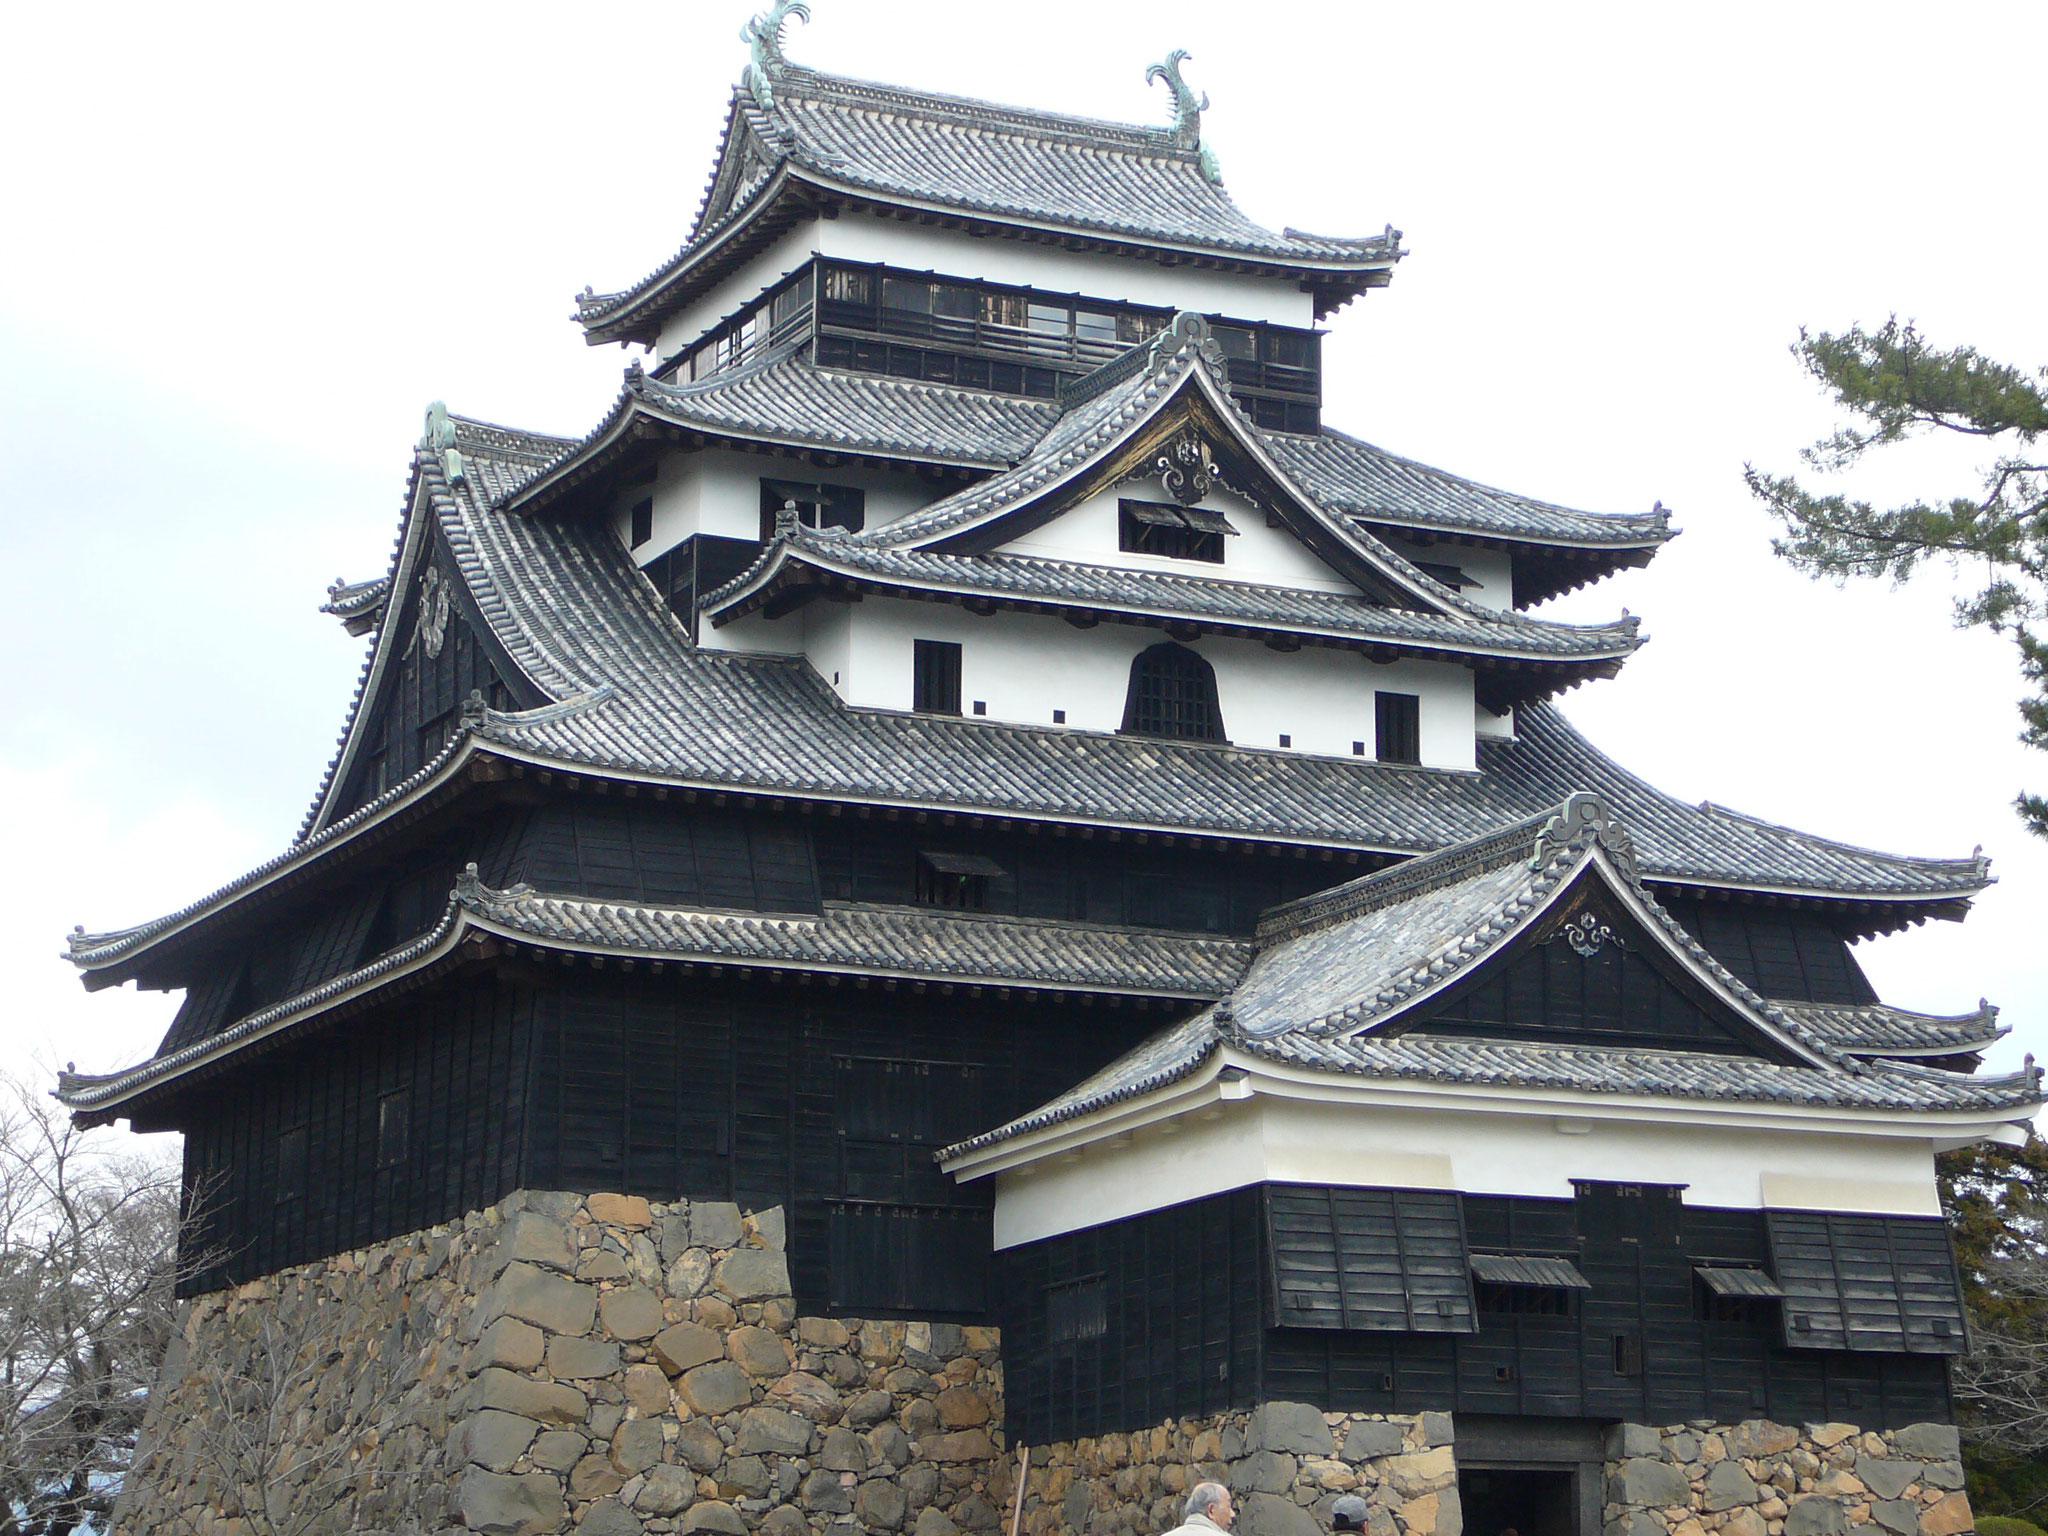 松江城(国宝）島根県松江市殿町、1611年築の四重五階地下一階の複合式で望楼型天守